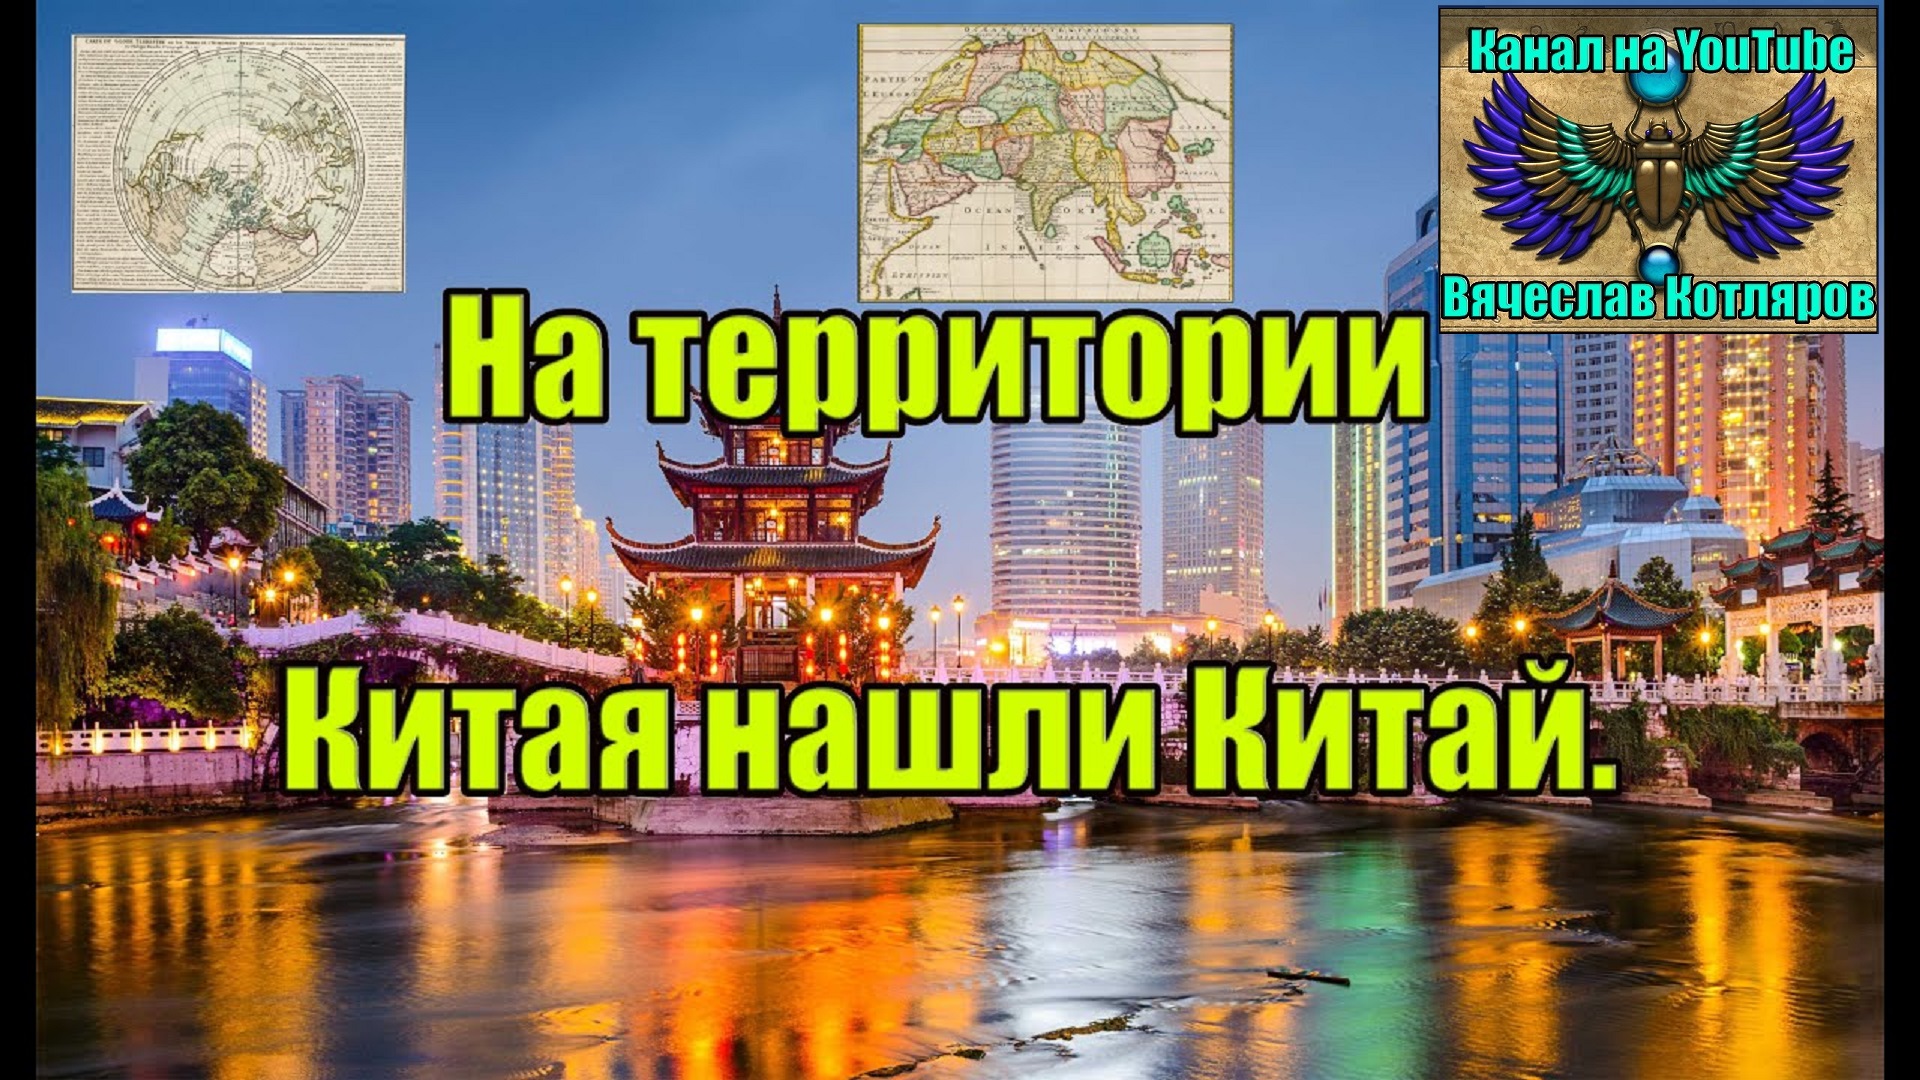 На территории Китая нашли Китай. (Вместе изучаем карты) Л.Д.О. 223 часть. Вячеслав Котляров.